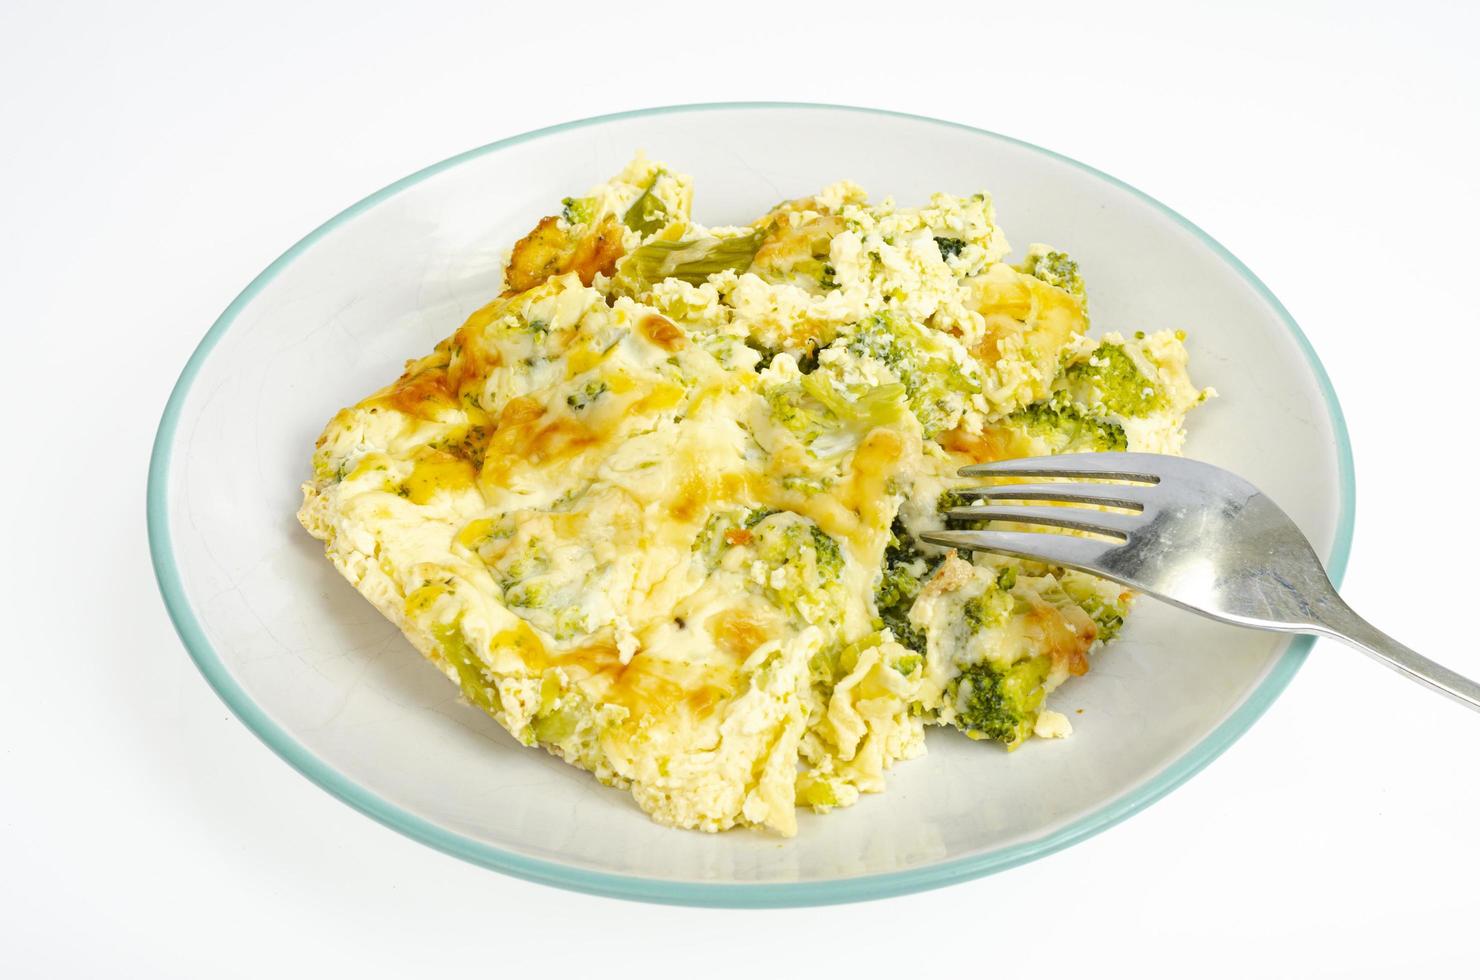 omelete com brócolis, comida saudável. foto de estúdio